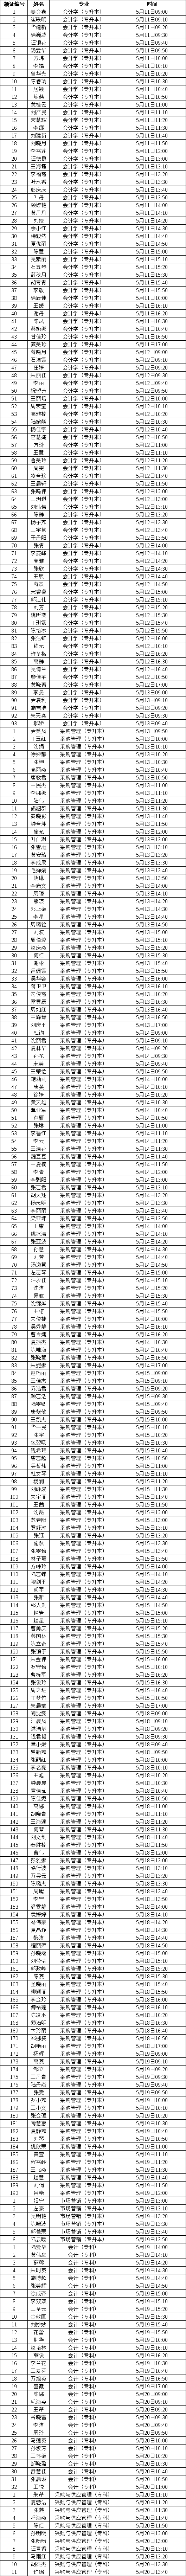 上海财经大学2019年下半年自考毕业证书发放通知